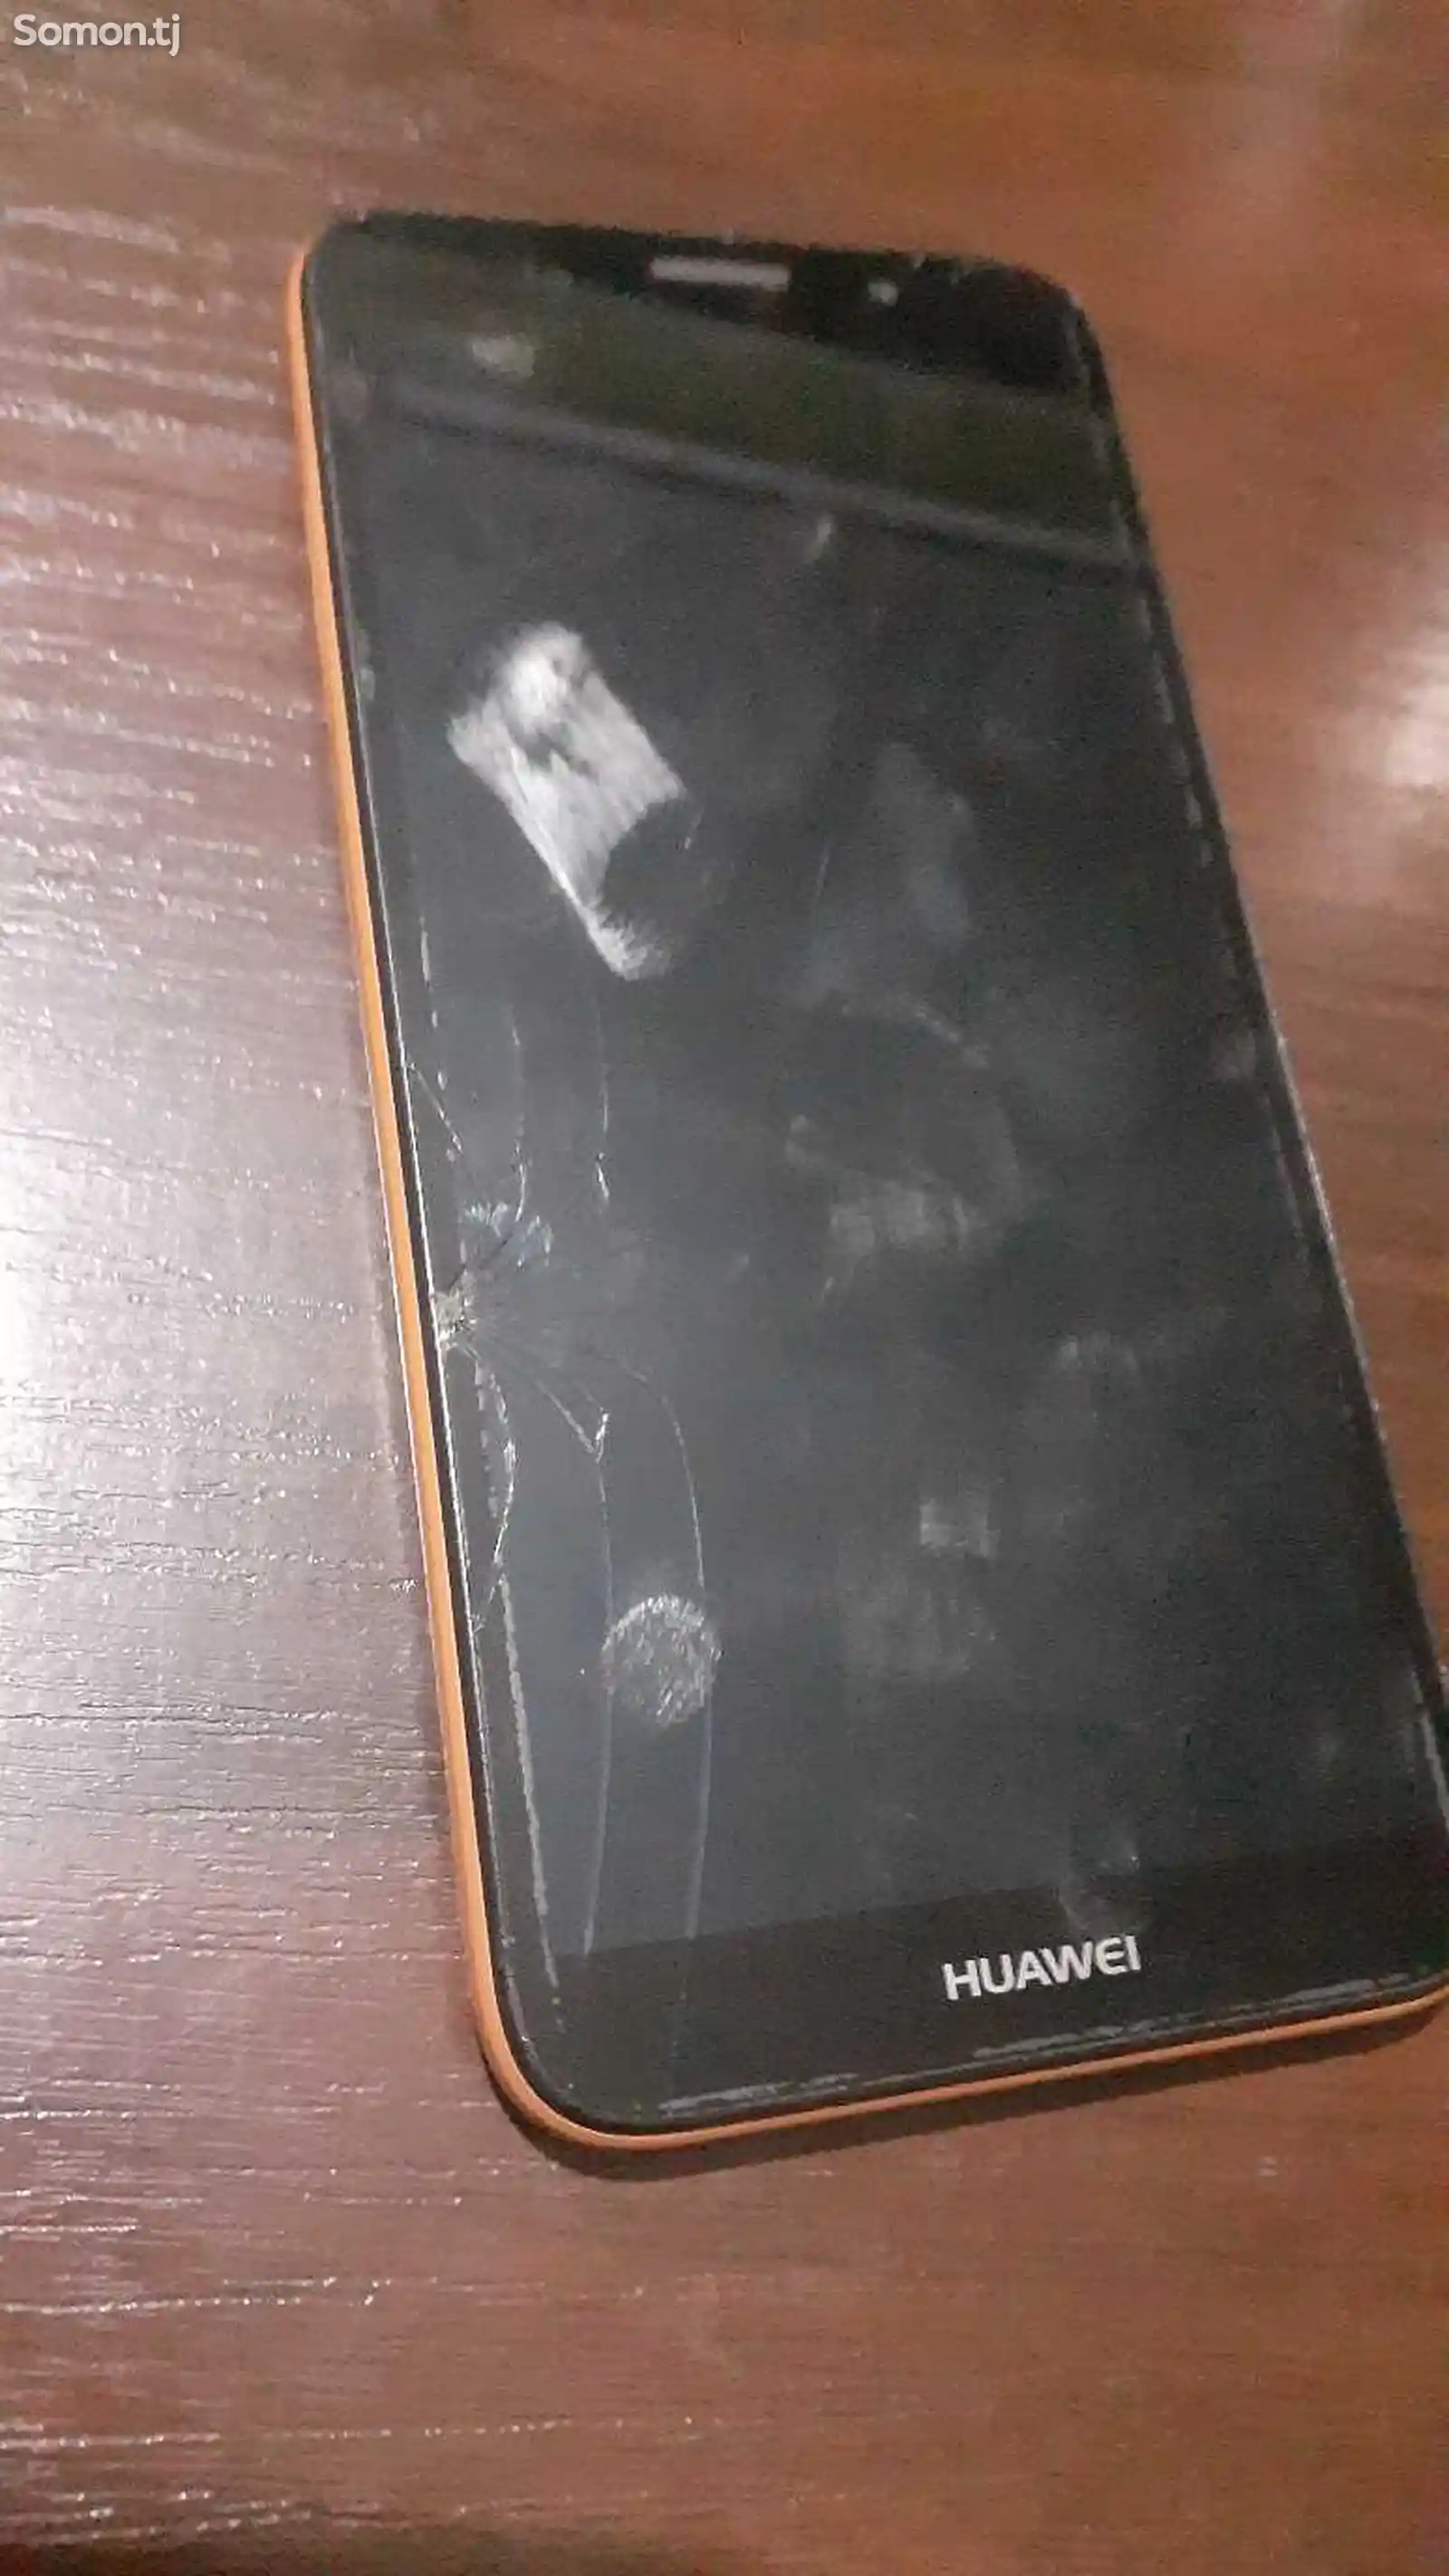 Huawei Y5-1